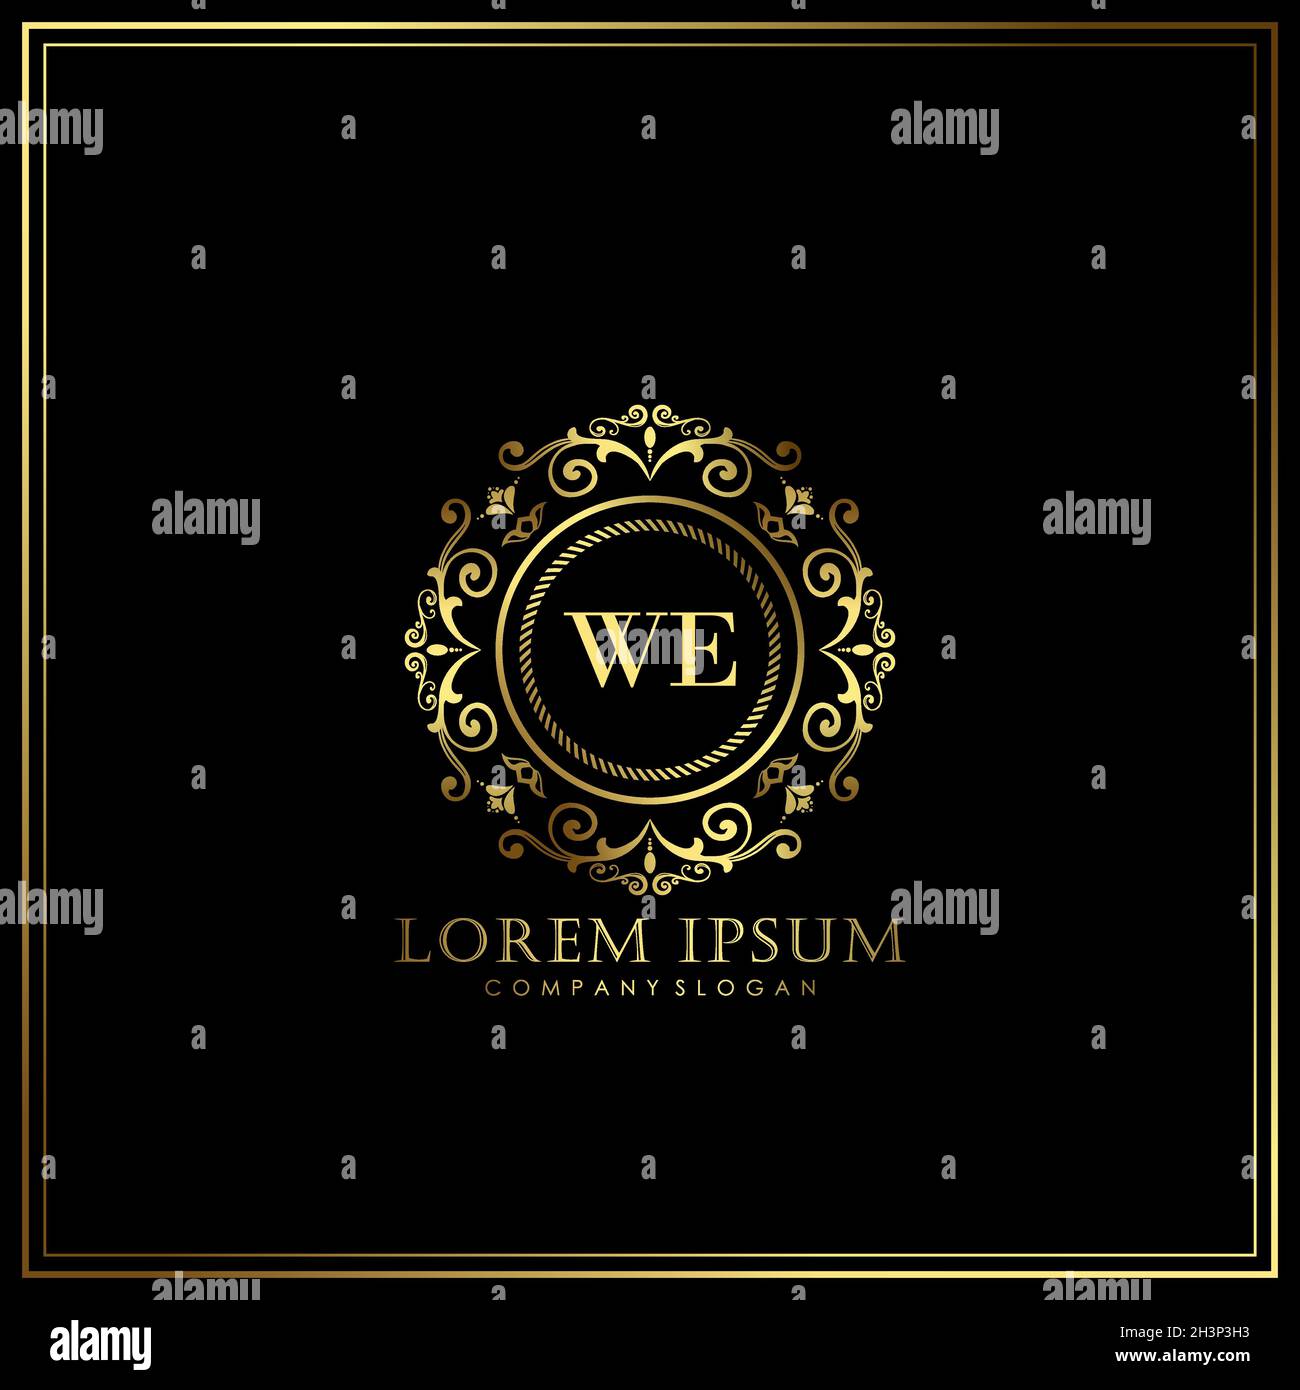 WIR Initial Letter Luxury Logo Vorlage in Vektor für Restaurant, Royalty, Boutique, Cafe, Hotel, Wappentisch, Schmuck, Mode und andere Vektorgrafik Stock Vektor